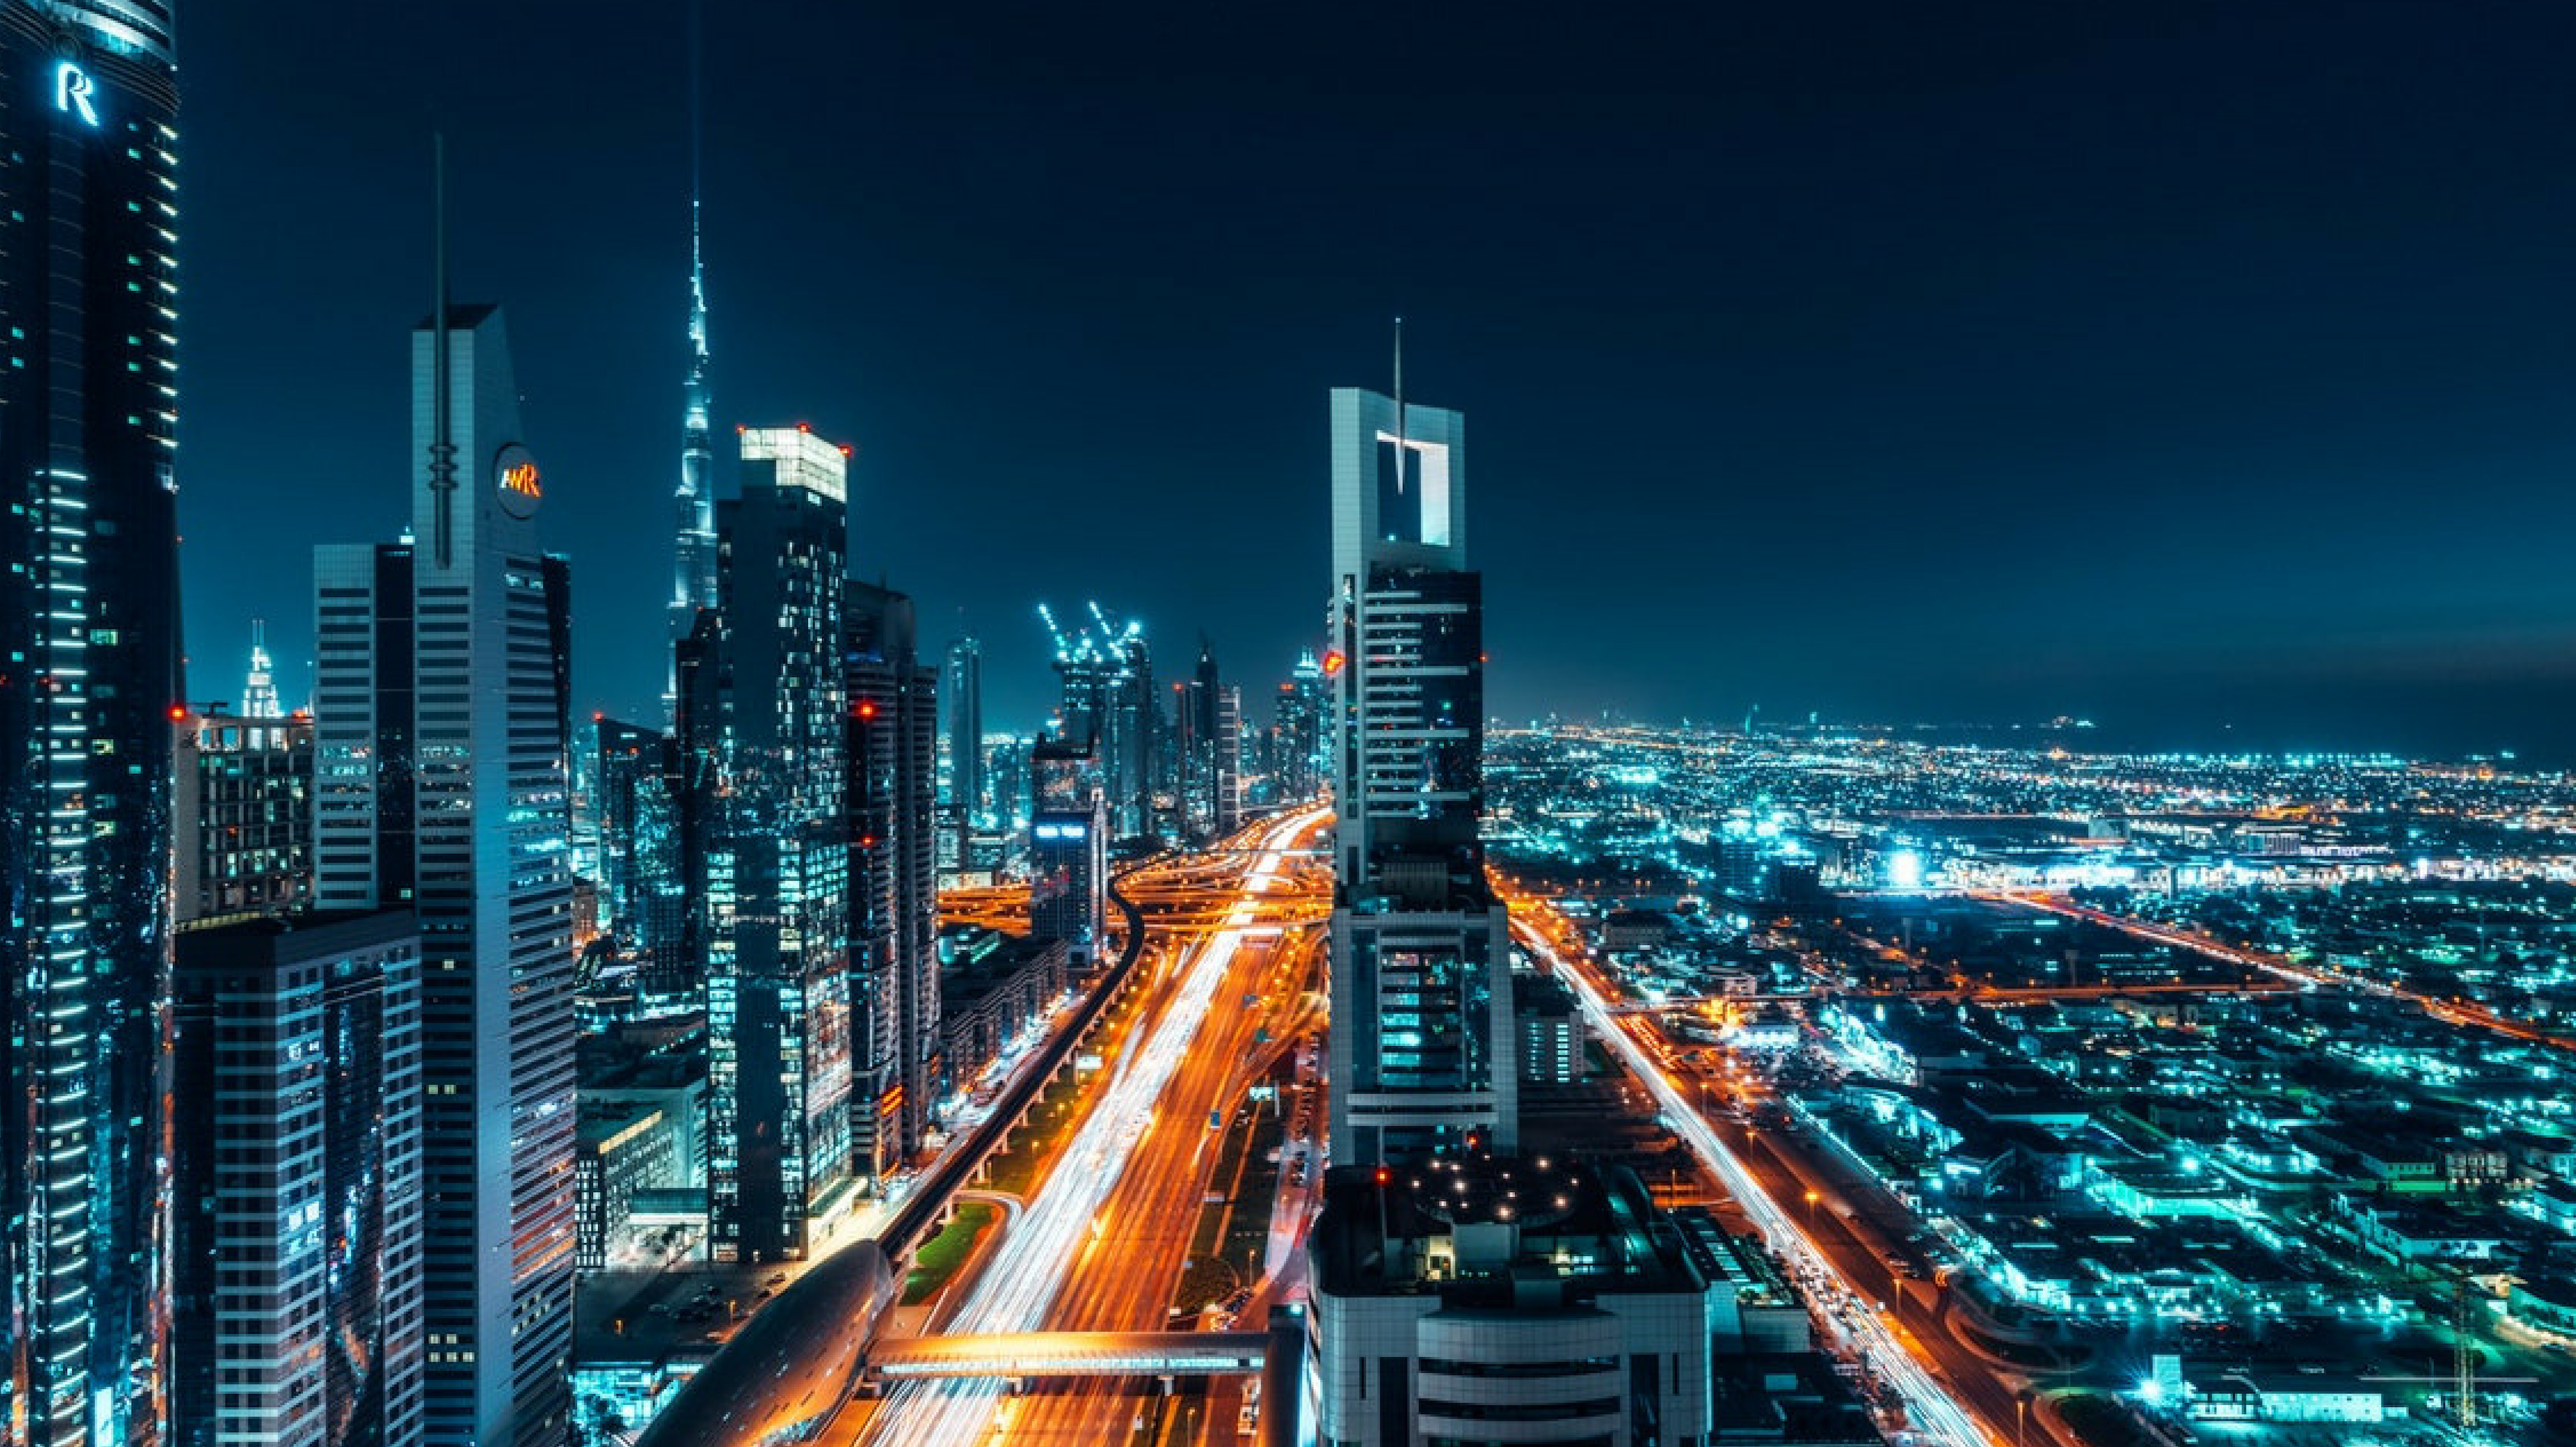 Dubai – A City of Superlatives